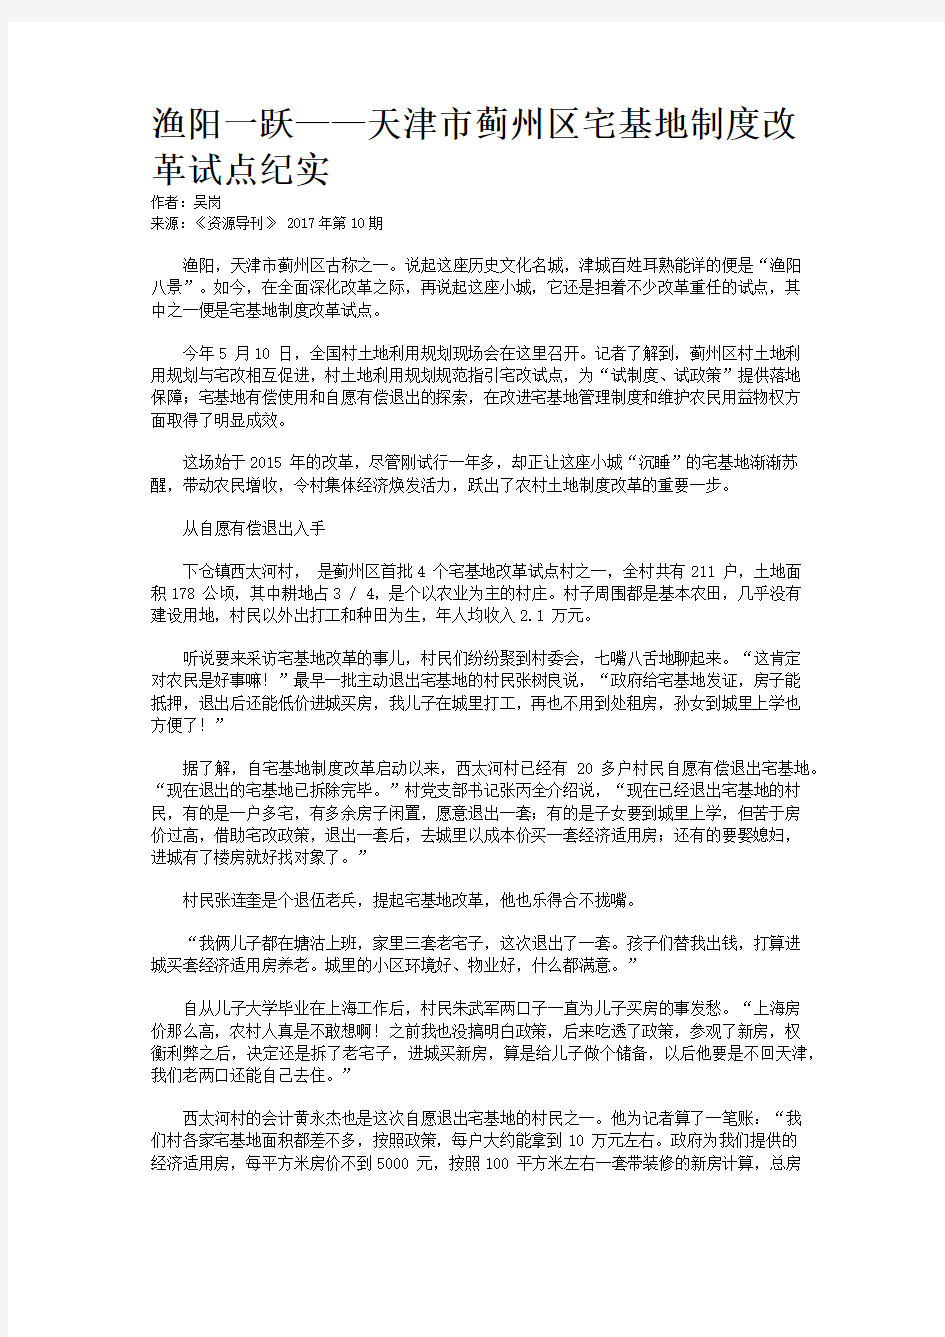 渔阳一跃——天津市蓟州区宅基地制度改革试点纪实